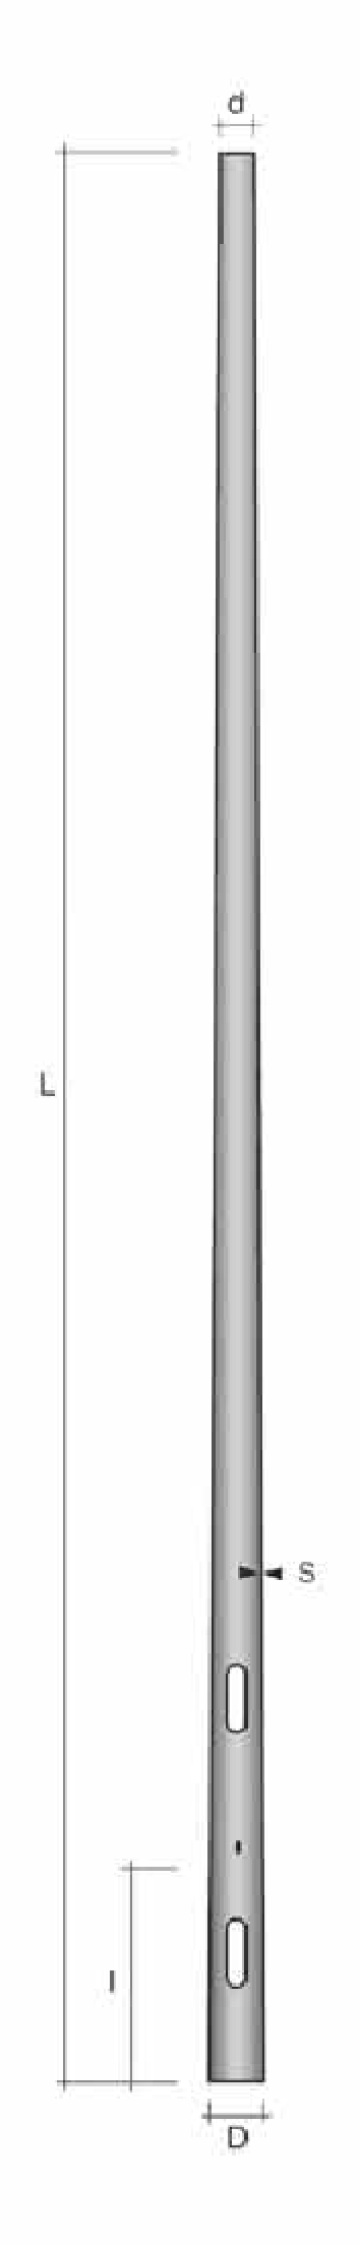 Stalp conic ingropat h=4.5m de la Metalsafe Lighting Srl